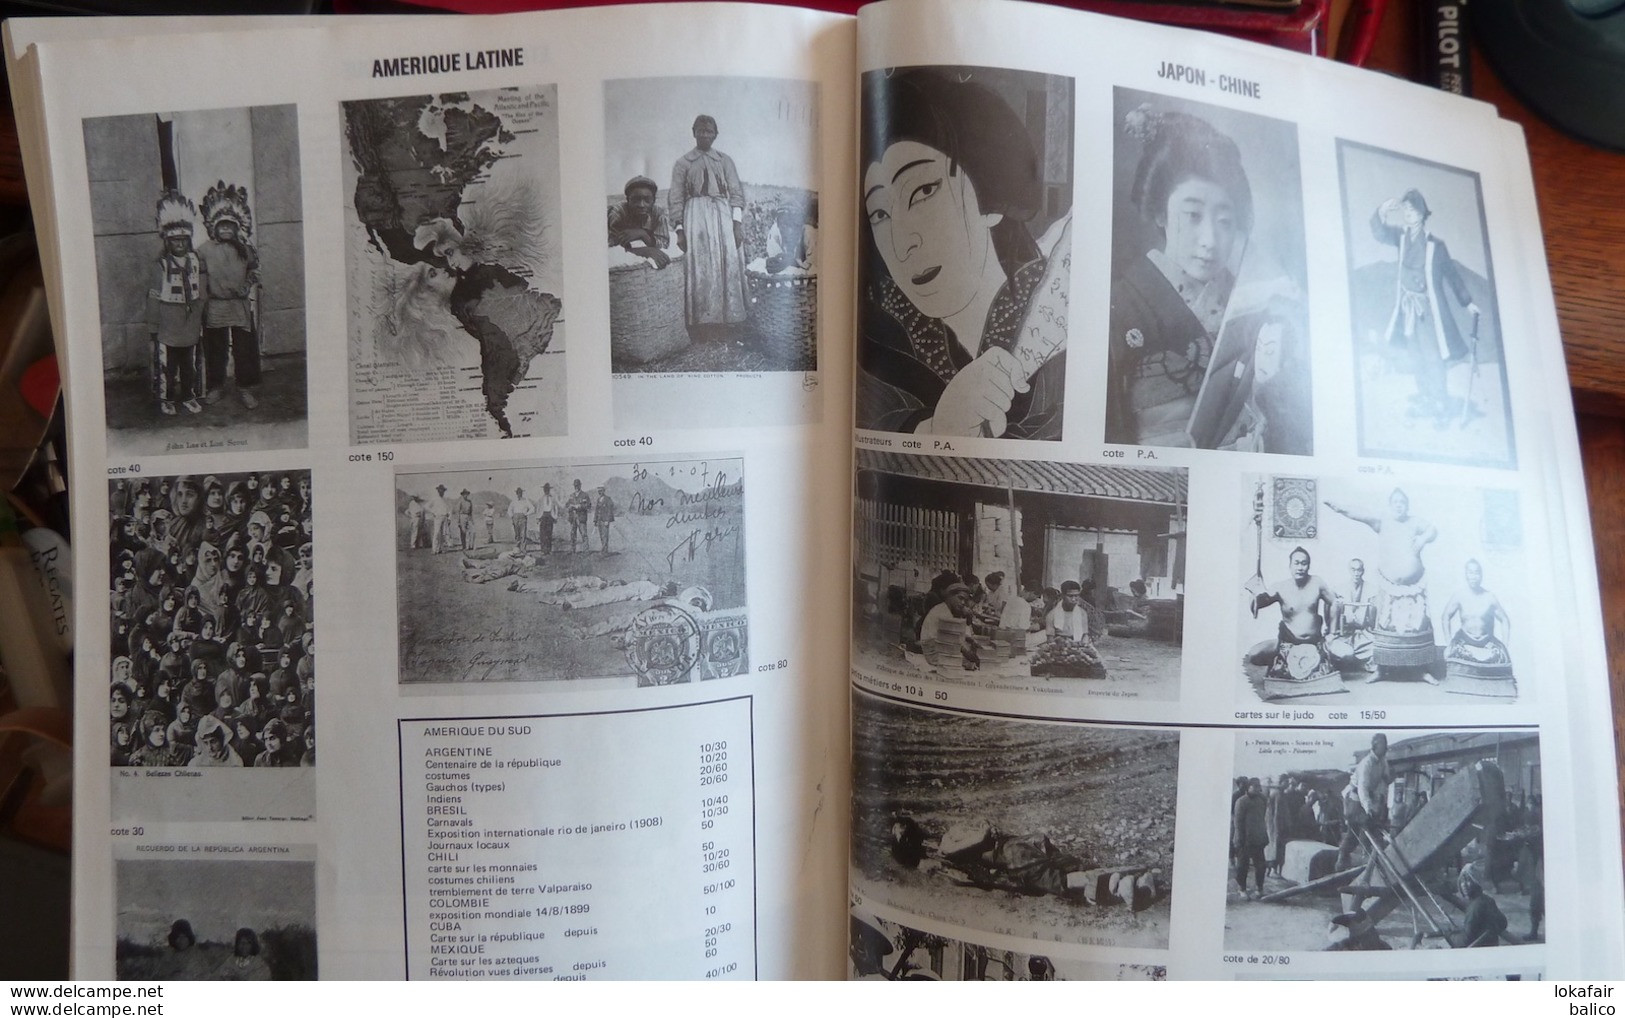 ARGUS  BAUDET - 1978 / 1979 Encyclopédie Internationale De La Cartes Postales Anciennes  (Avec Quelques Pages Sur 352) - Books & Catalogs